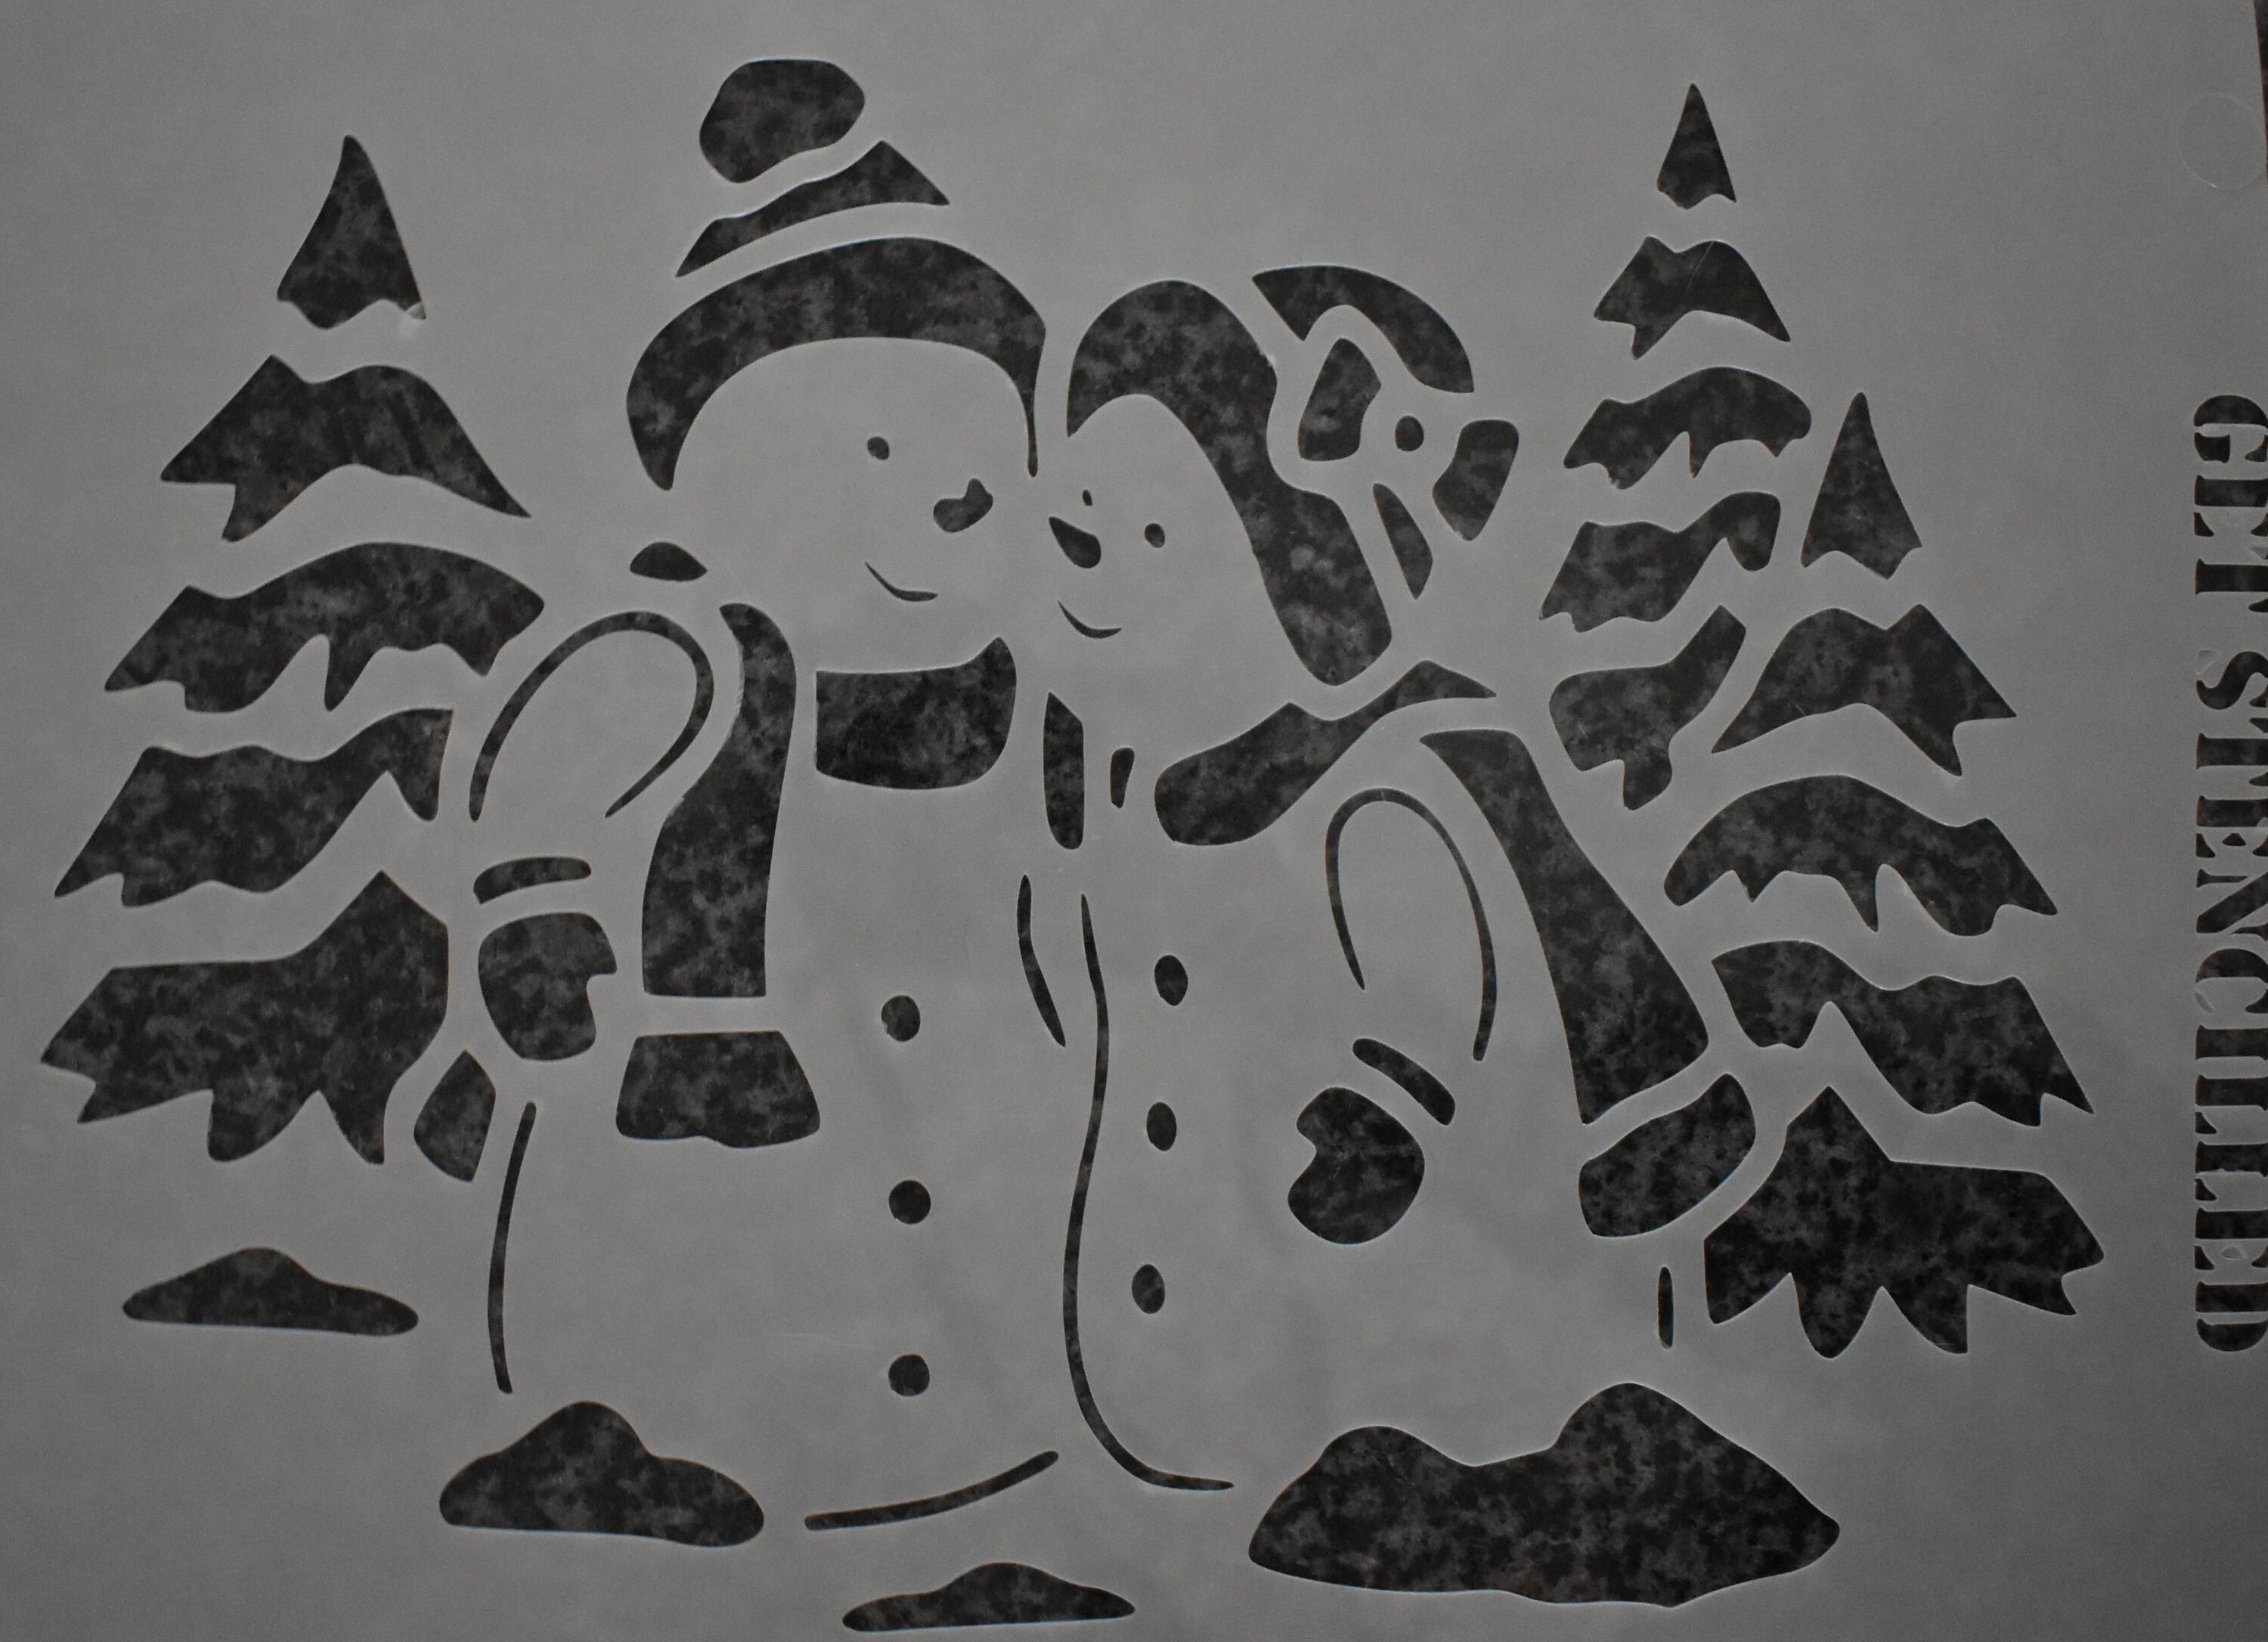 9264 LOVE snowman stencil